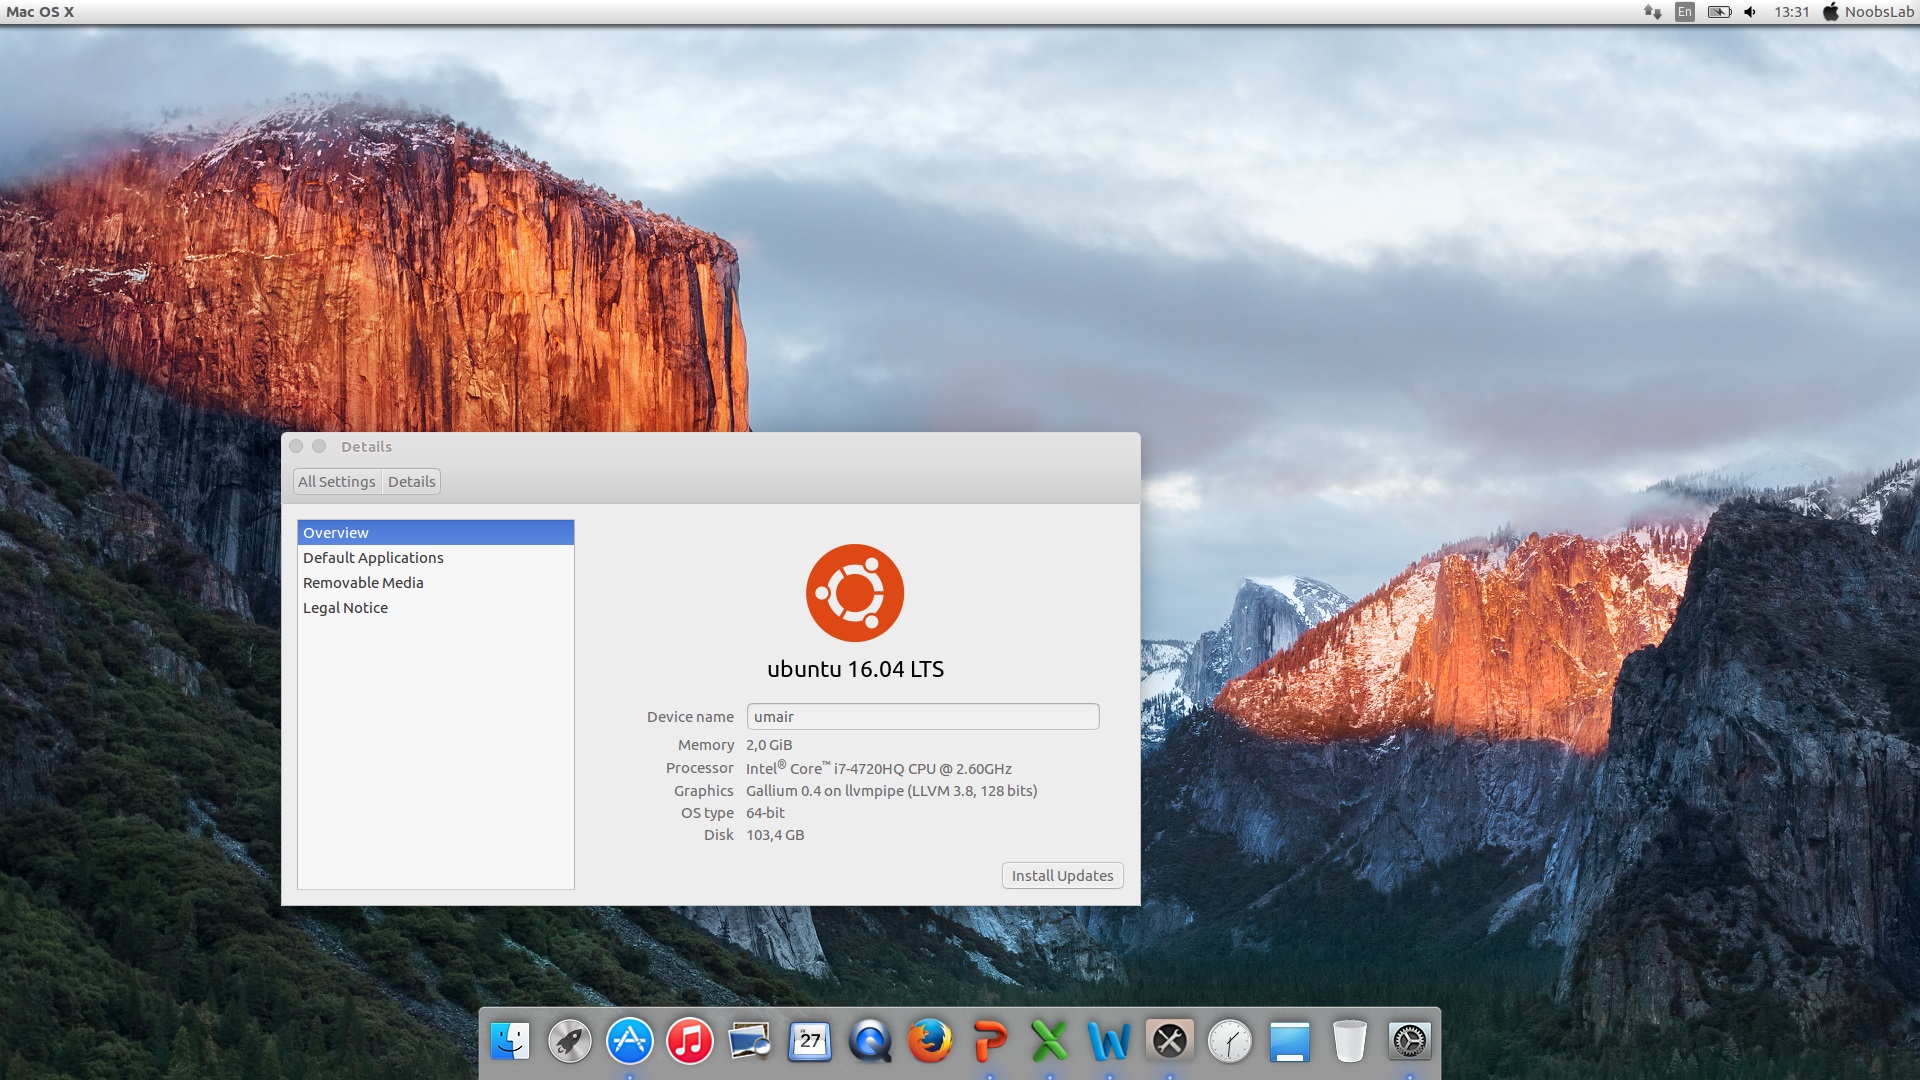 Mac style for ubuntu operating system